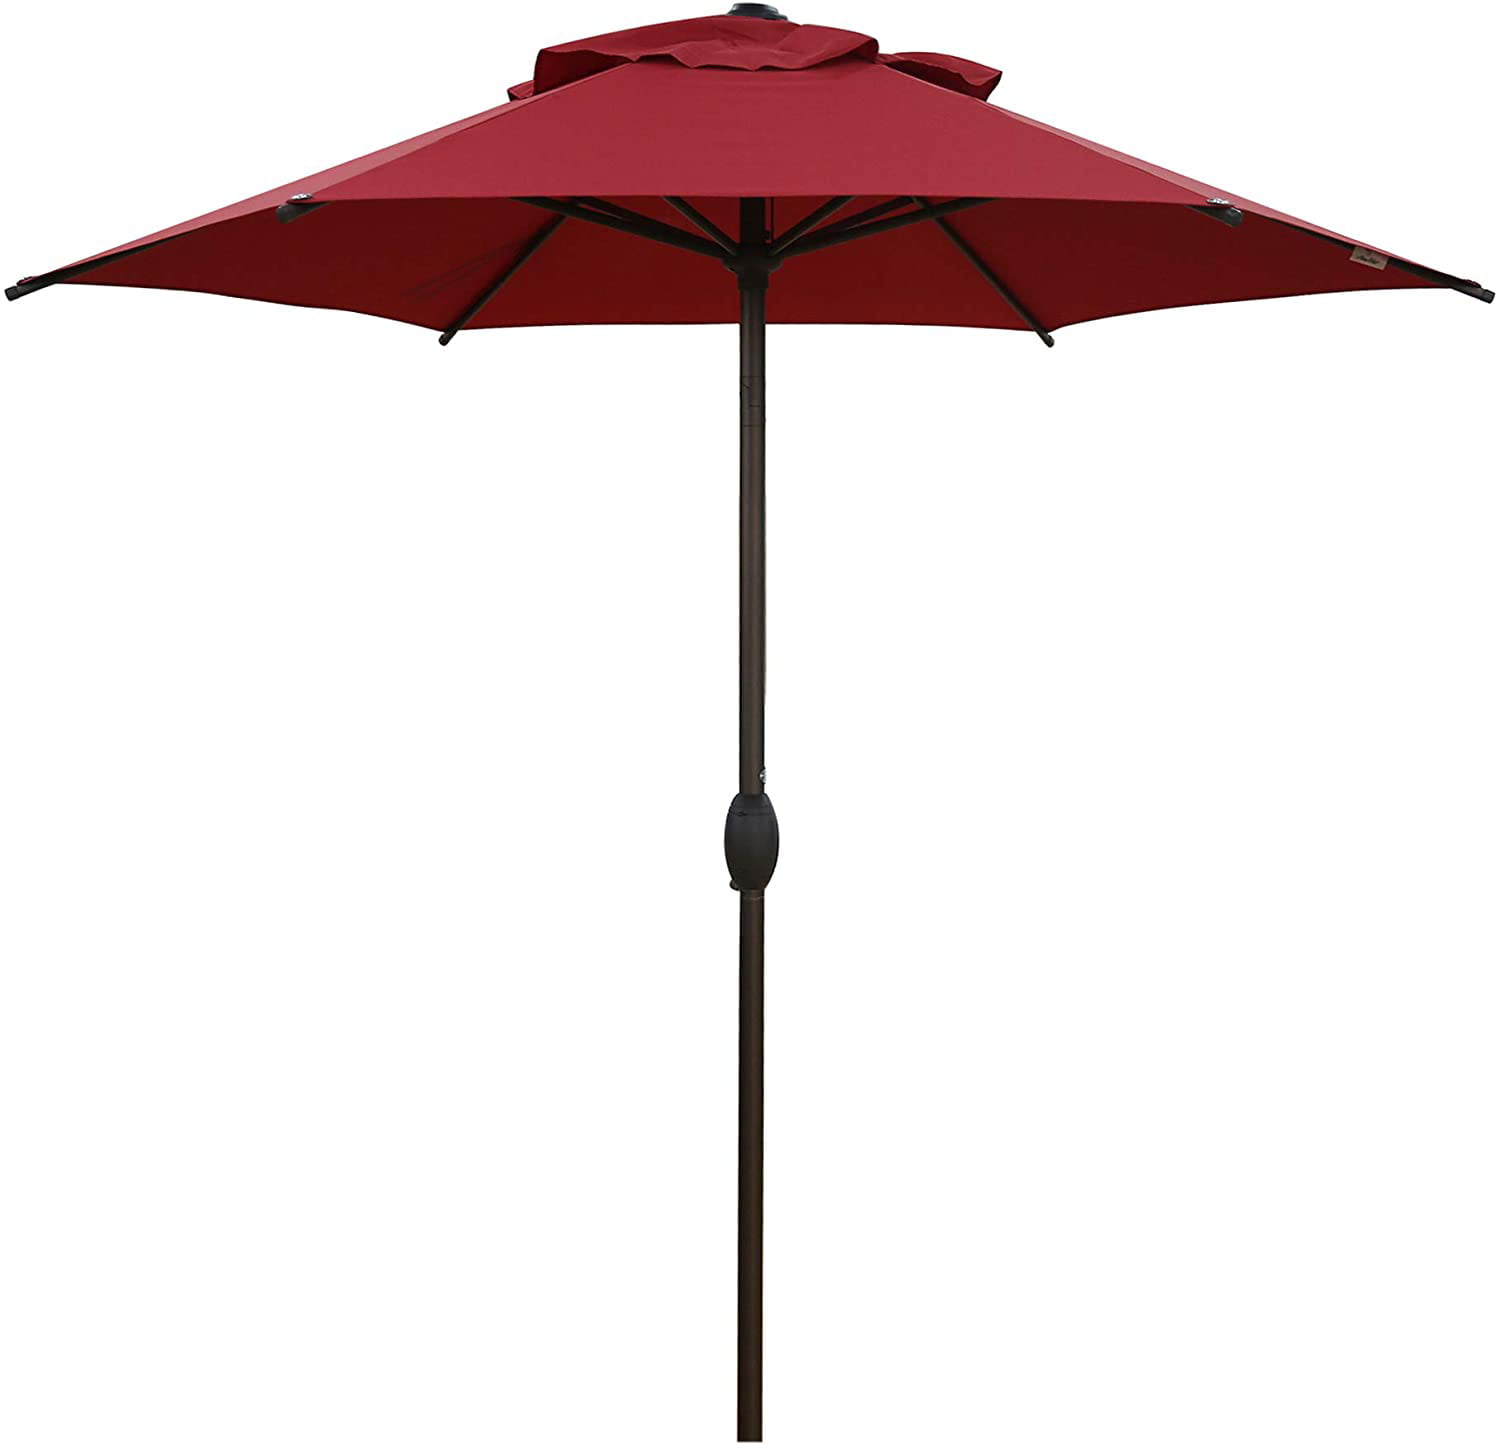 Abba Patio 7.5ft Patio Umbrella Outdoor Umbrella Patio Market Table Umbrella ... 